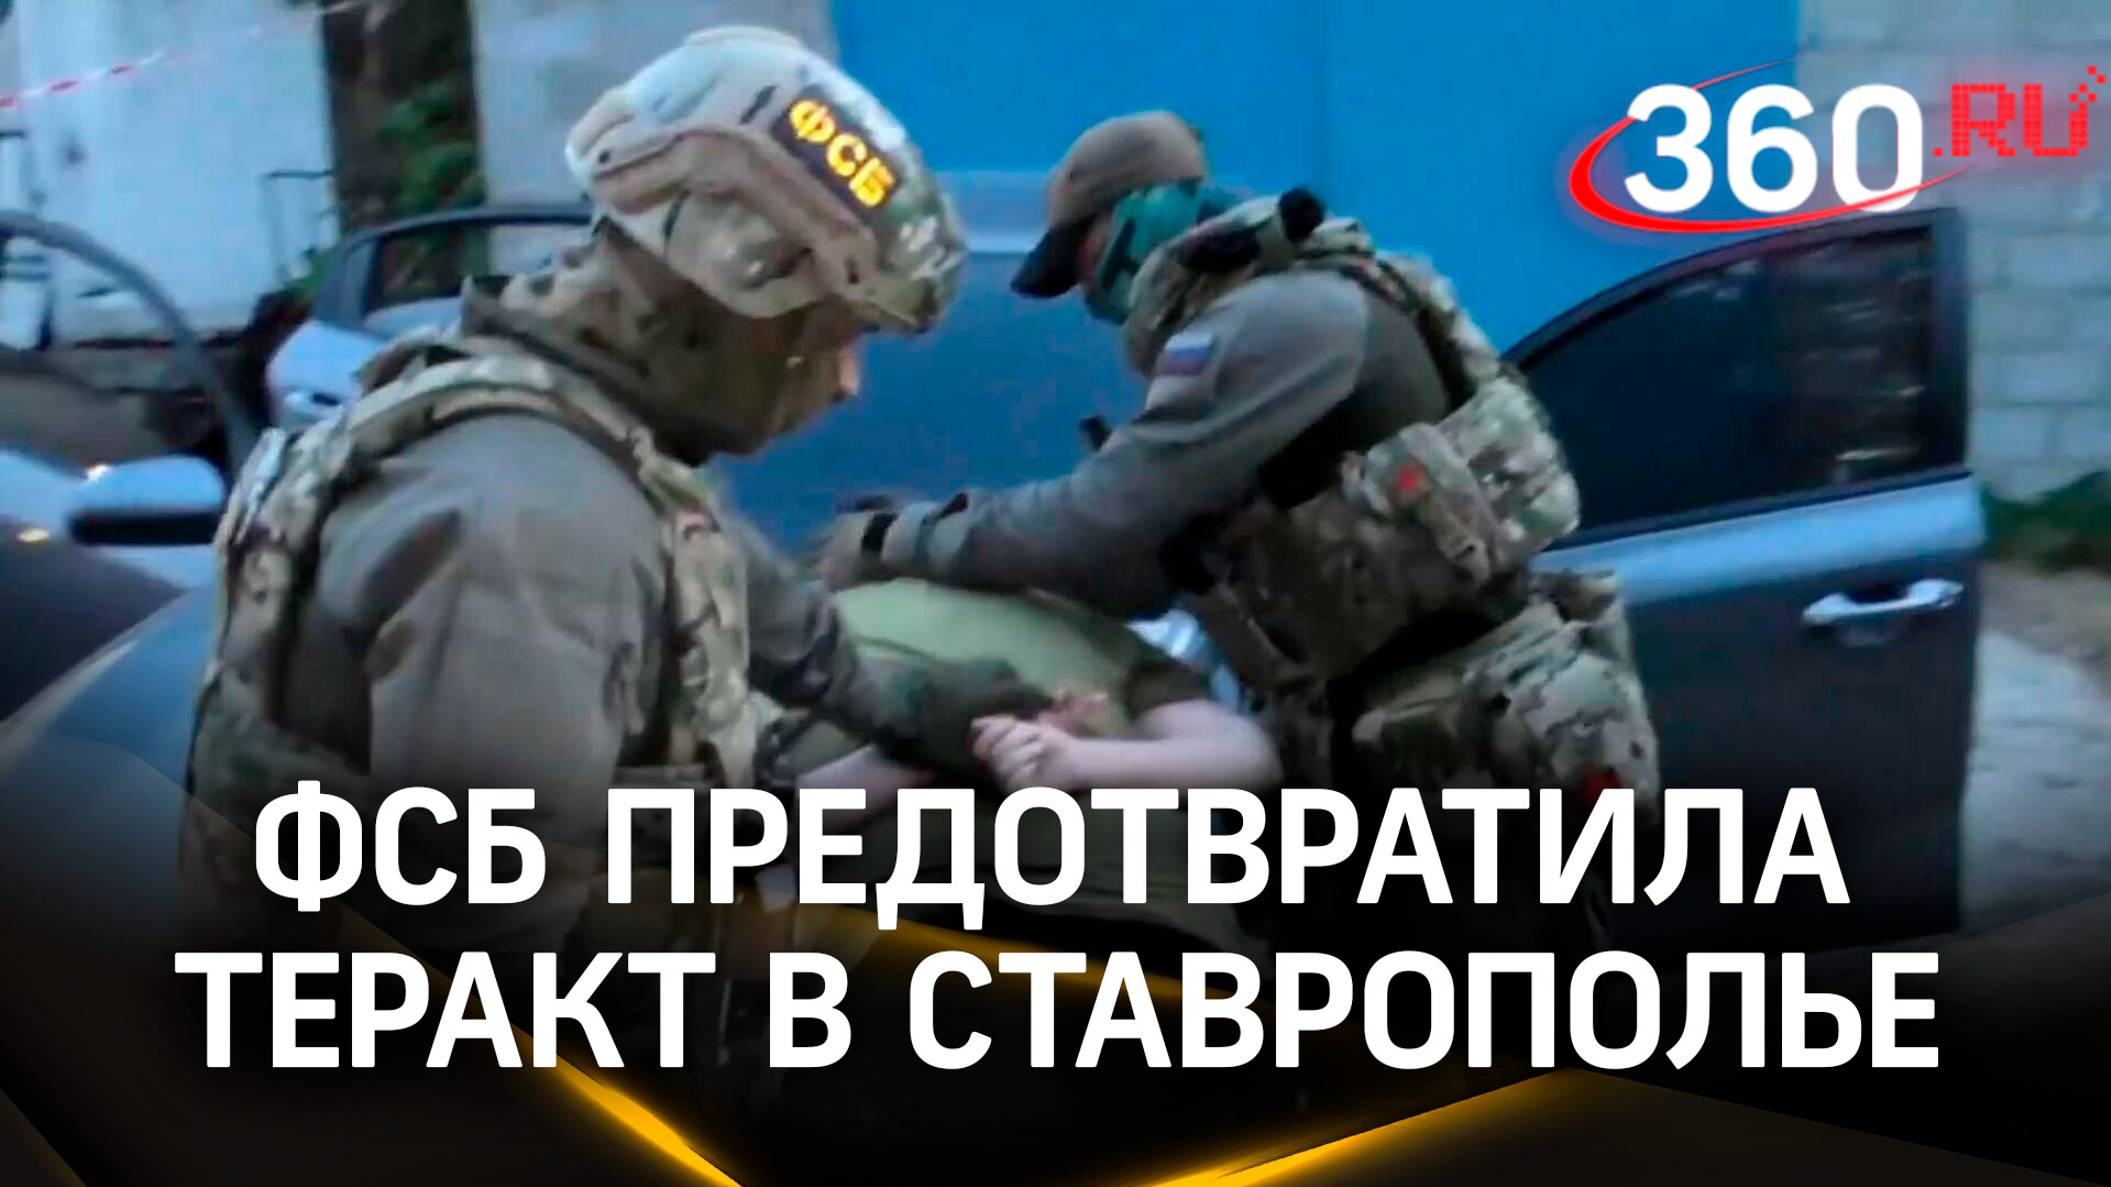 Хотел взорвать автовокзал, но положили мордой в пол: ФСБ задержала террориста на Ставрополье